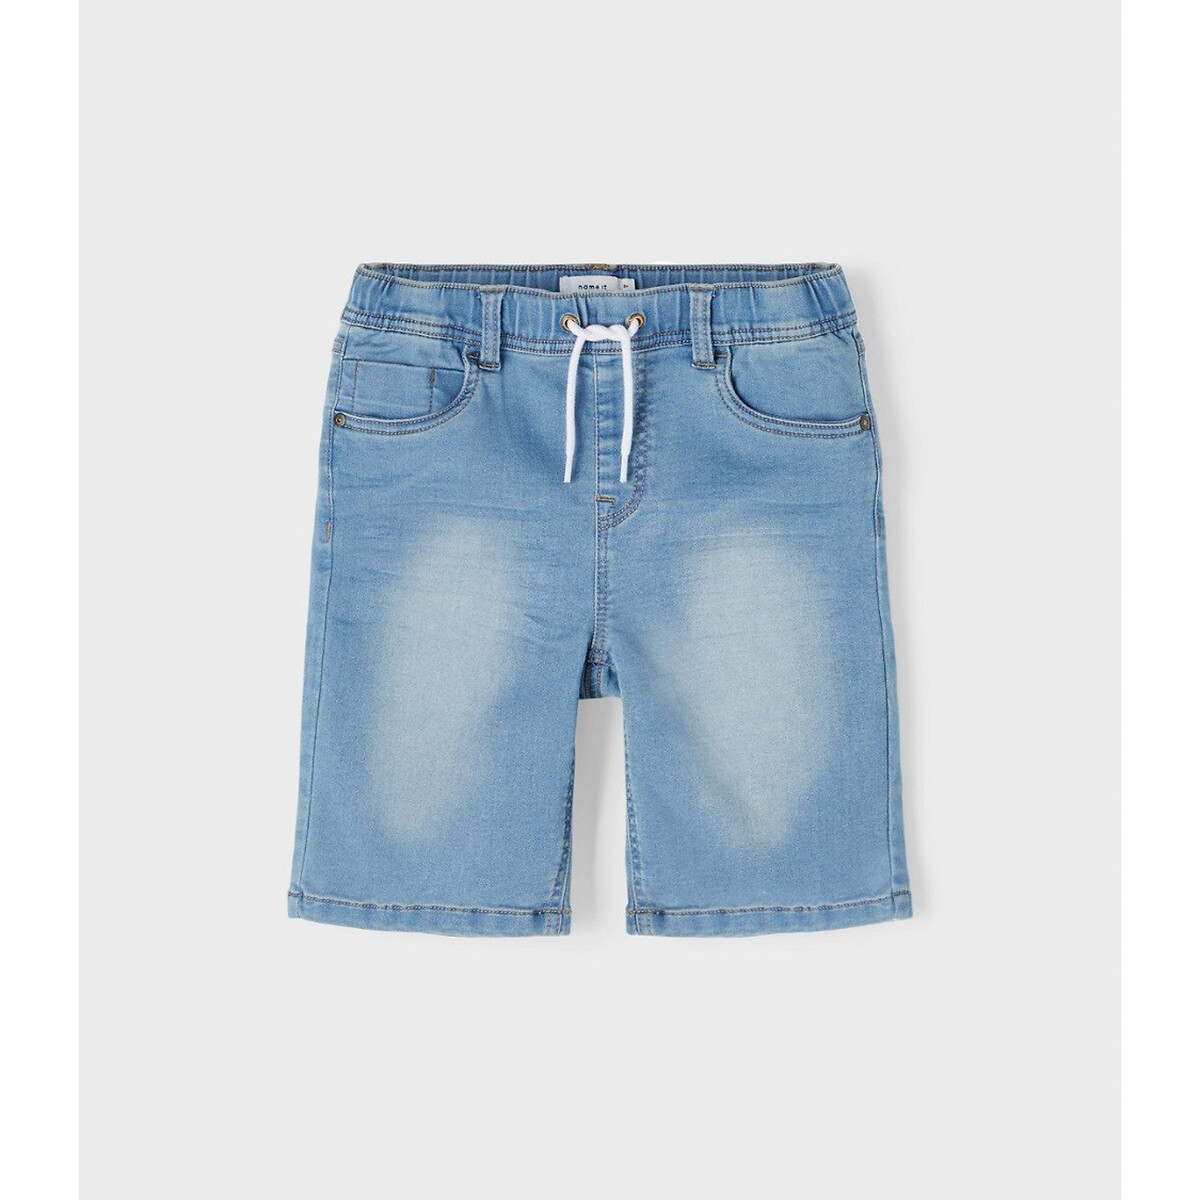 Шорты из джинсовой ткани в стиле джоггеров  10 синий LaRedoute, размер 10 - фото 3